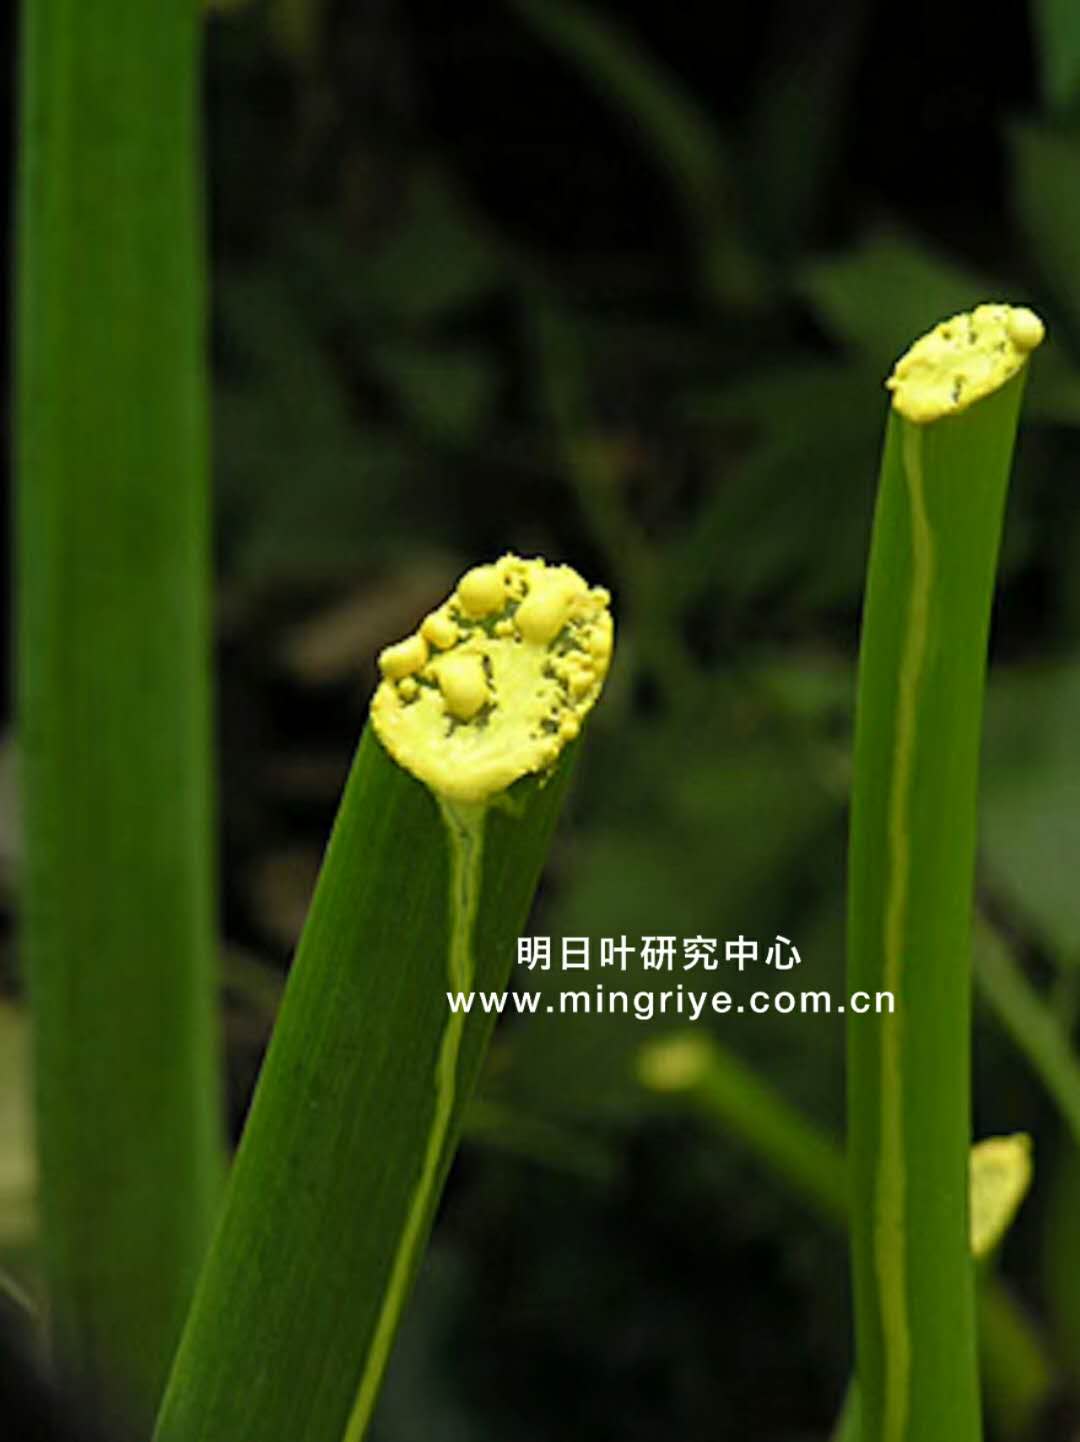 日本傳統長壽草-明日葉,16種氨基酸及20多種礦物質…